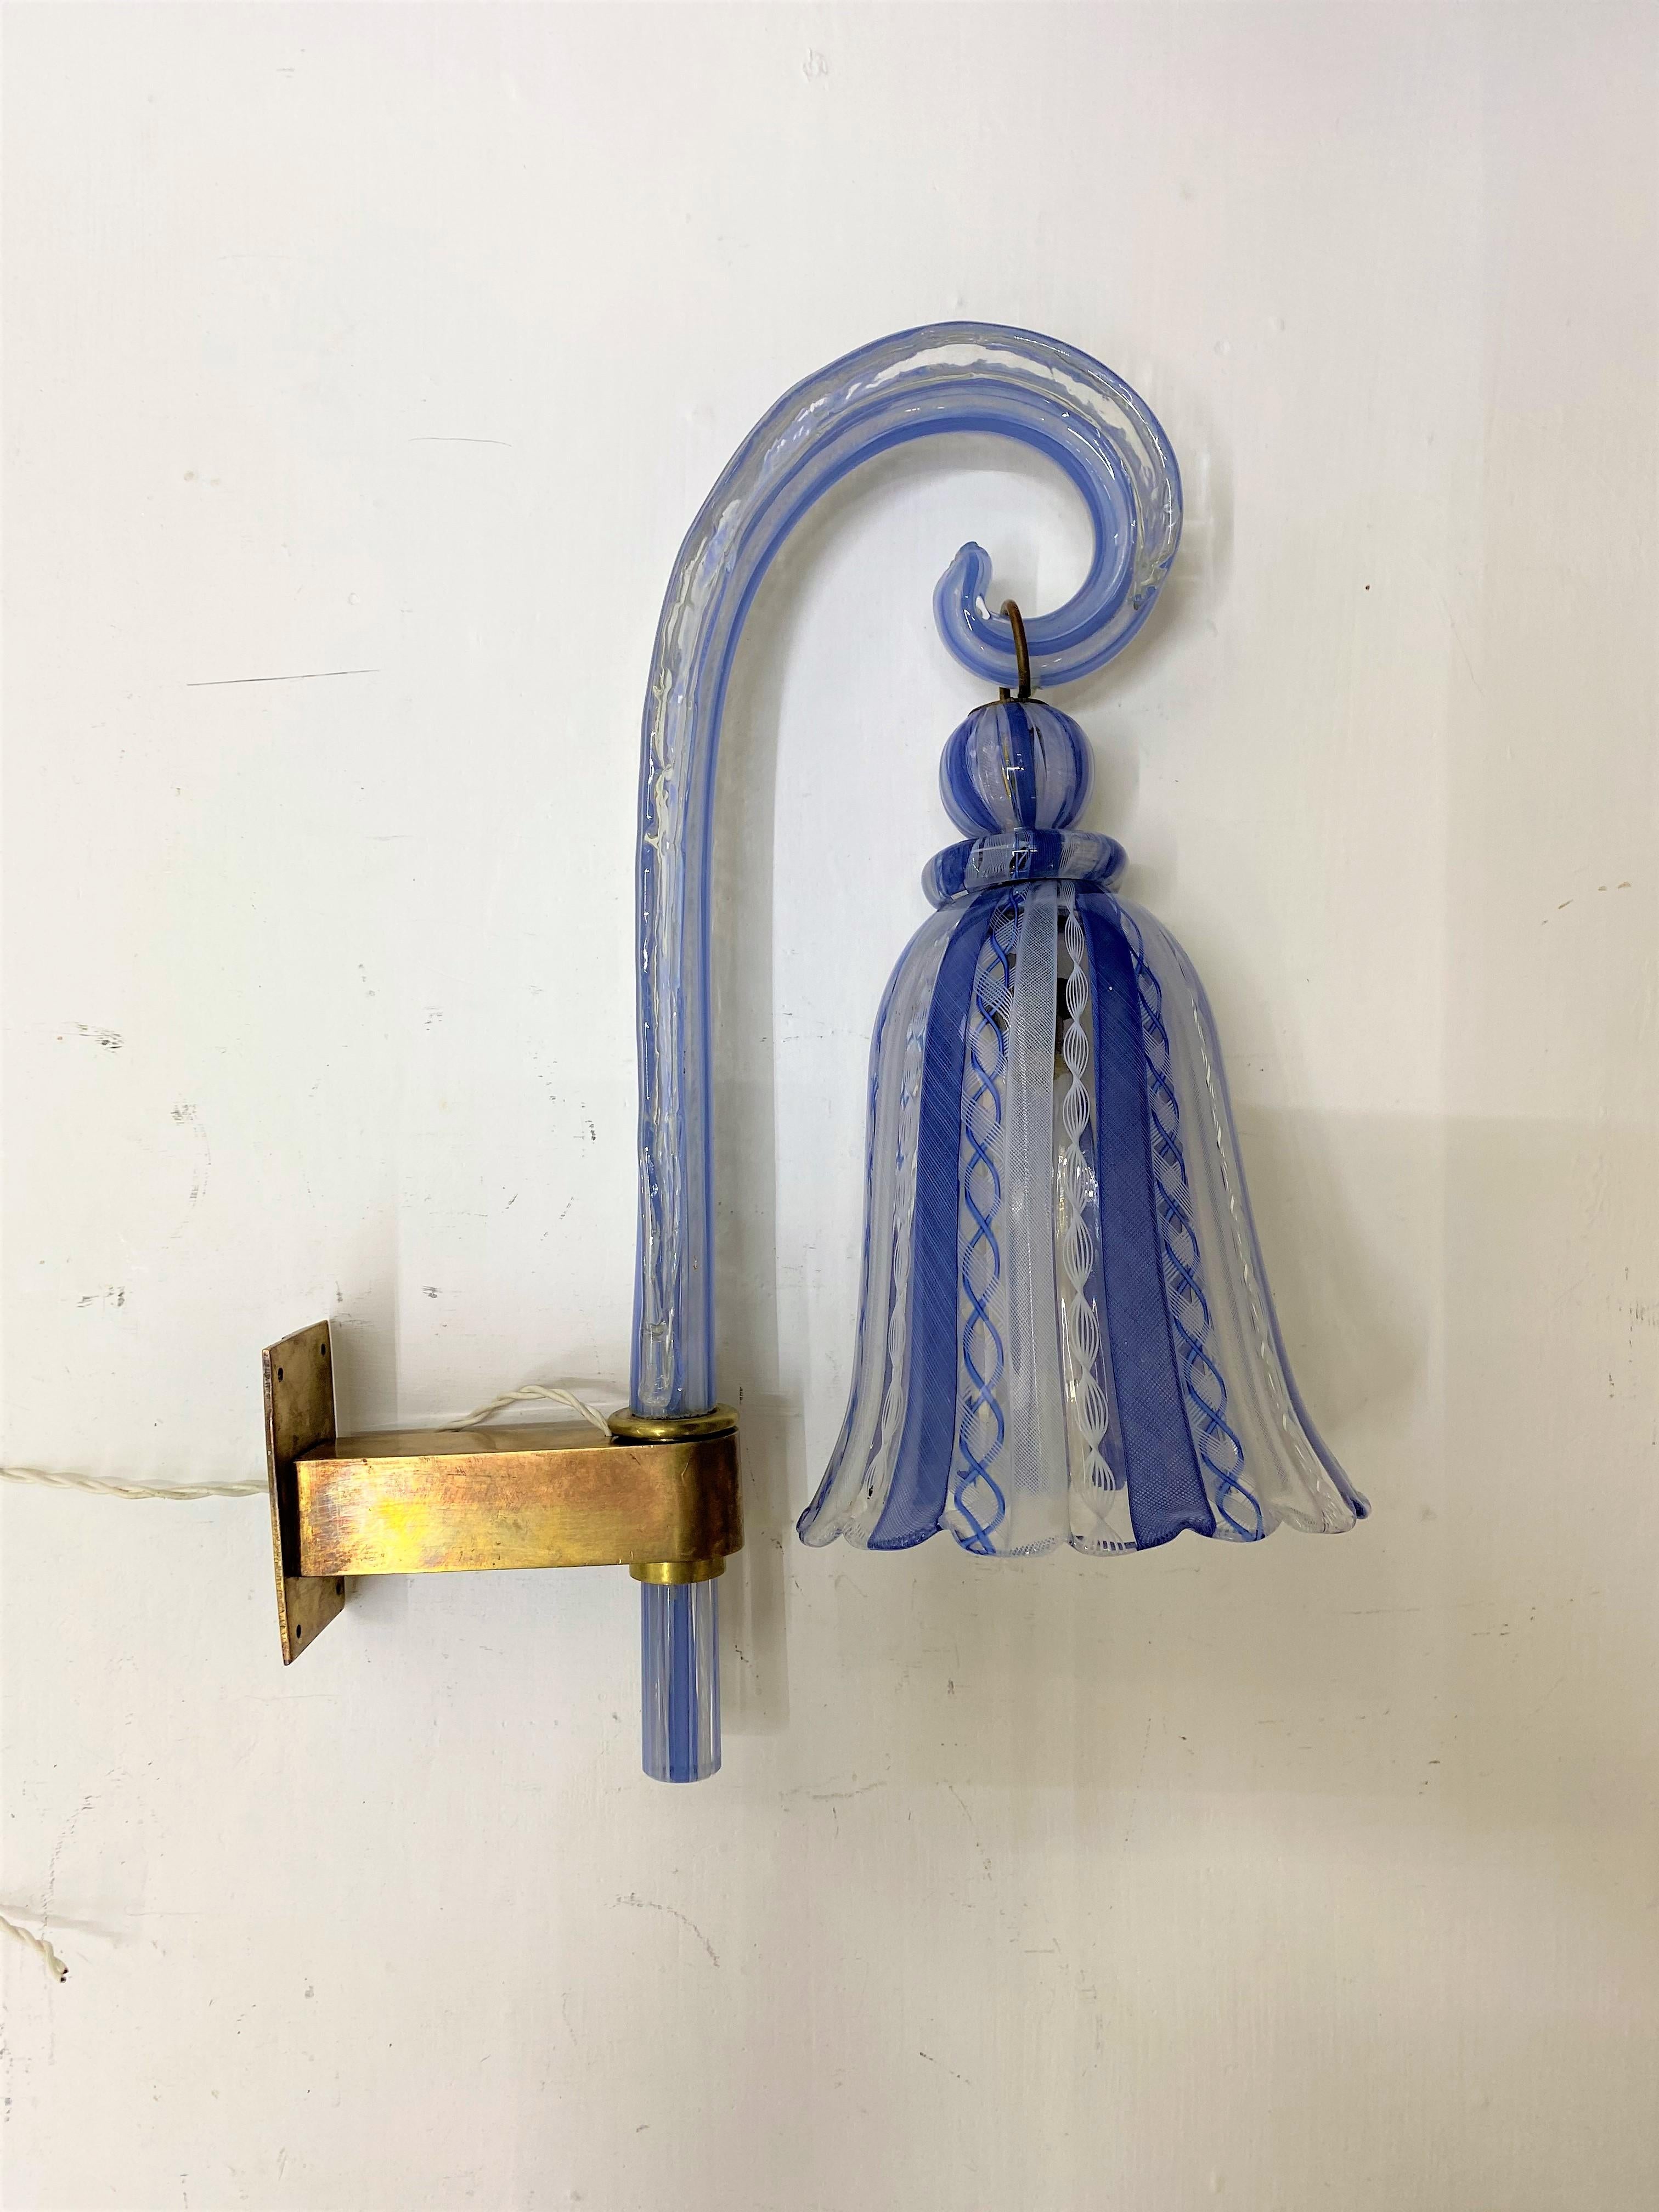 Applique Art déco en verre de Murano transparent, blanc et bleu, fabriquée selon la technique Zanfirico sur l'île de Murano, en Italie, vers 1930-40.
Le zanfirico est une technique originaire de l'île de Murano, en Italie. Le verre Zanfirico se